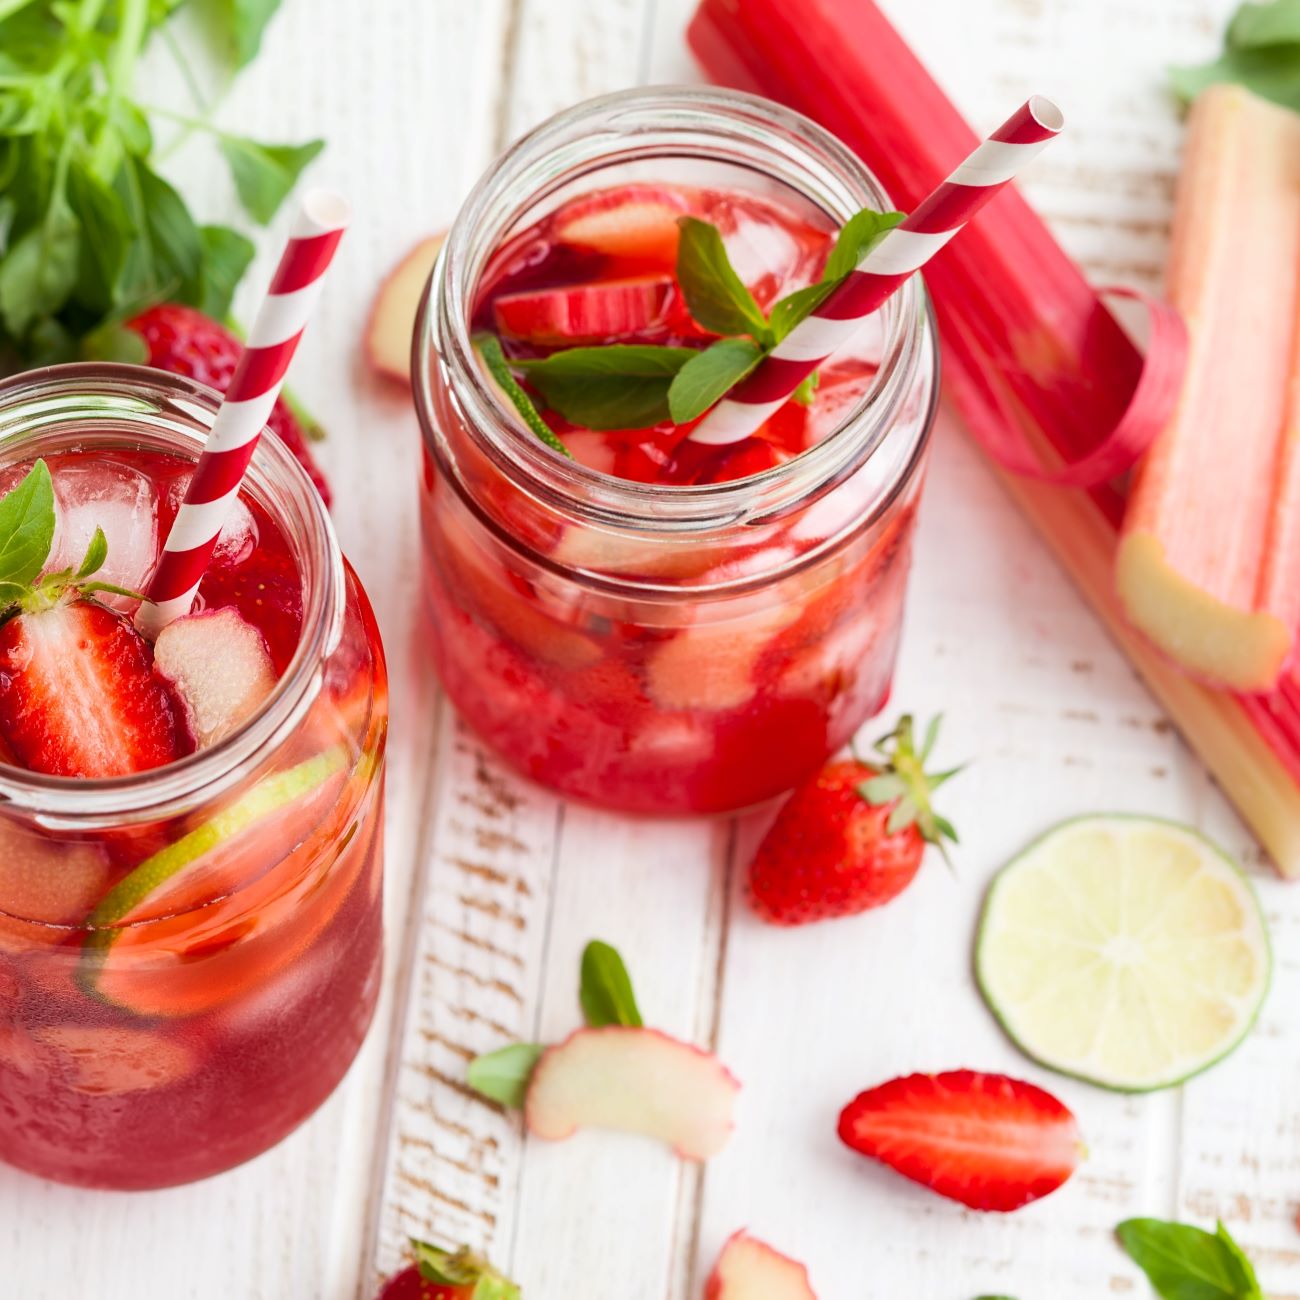 Erdbeer-Rhabarber-Limonade wir in Gläsern garniert serviert.